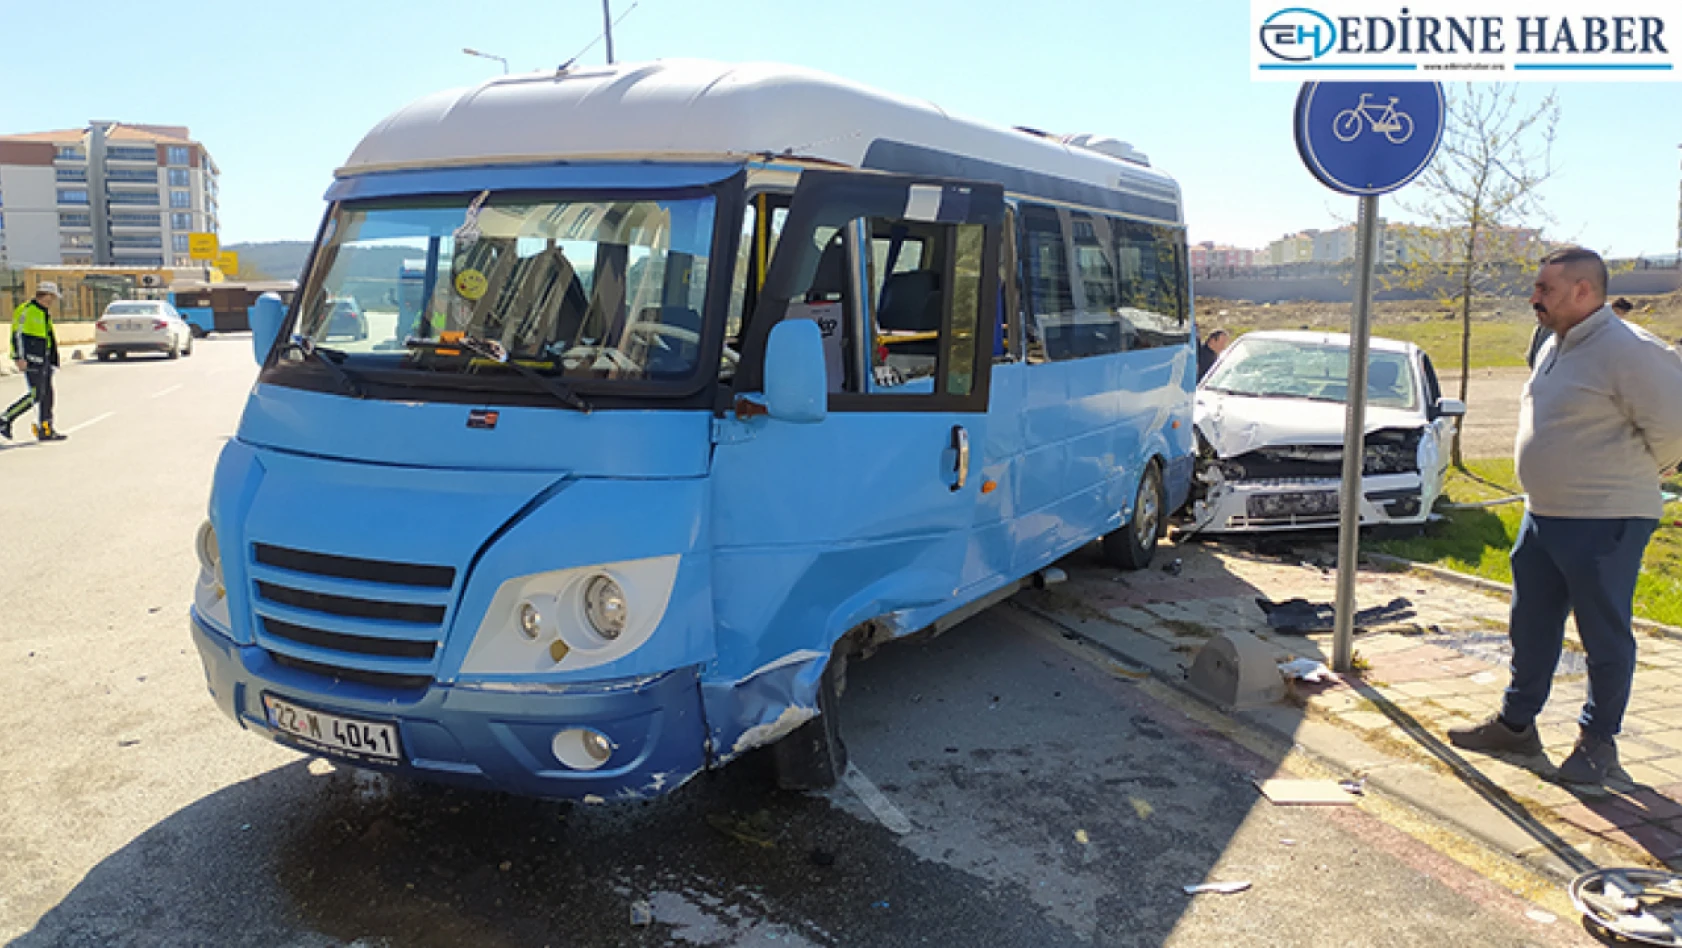 Edirne'de minibüsle otomobilin çarpıştığı kazada 5 kişi yaralandı